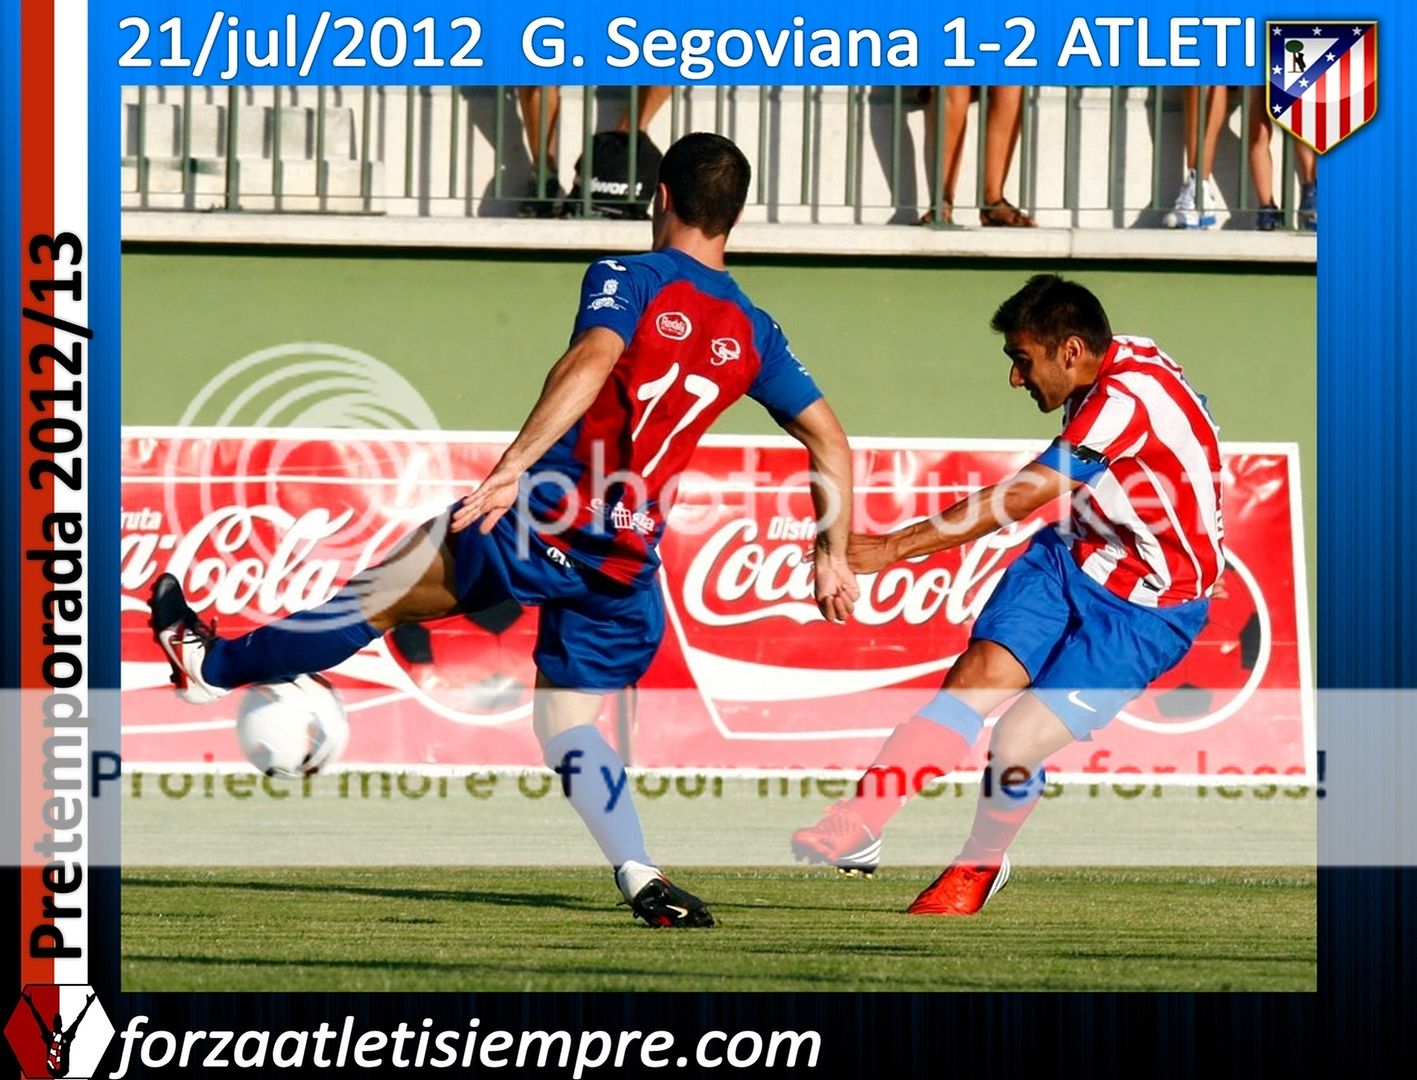 G. Segoviana 1-2 Atlético - El Atlético decepcionó en su estreno en Segovia 004Copiar-1